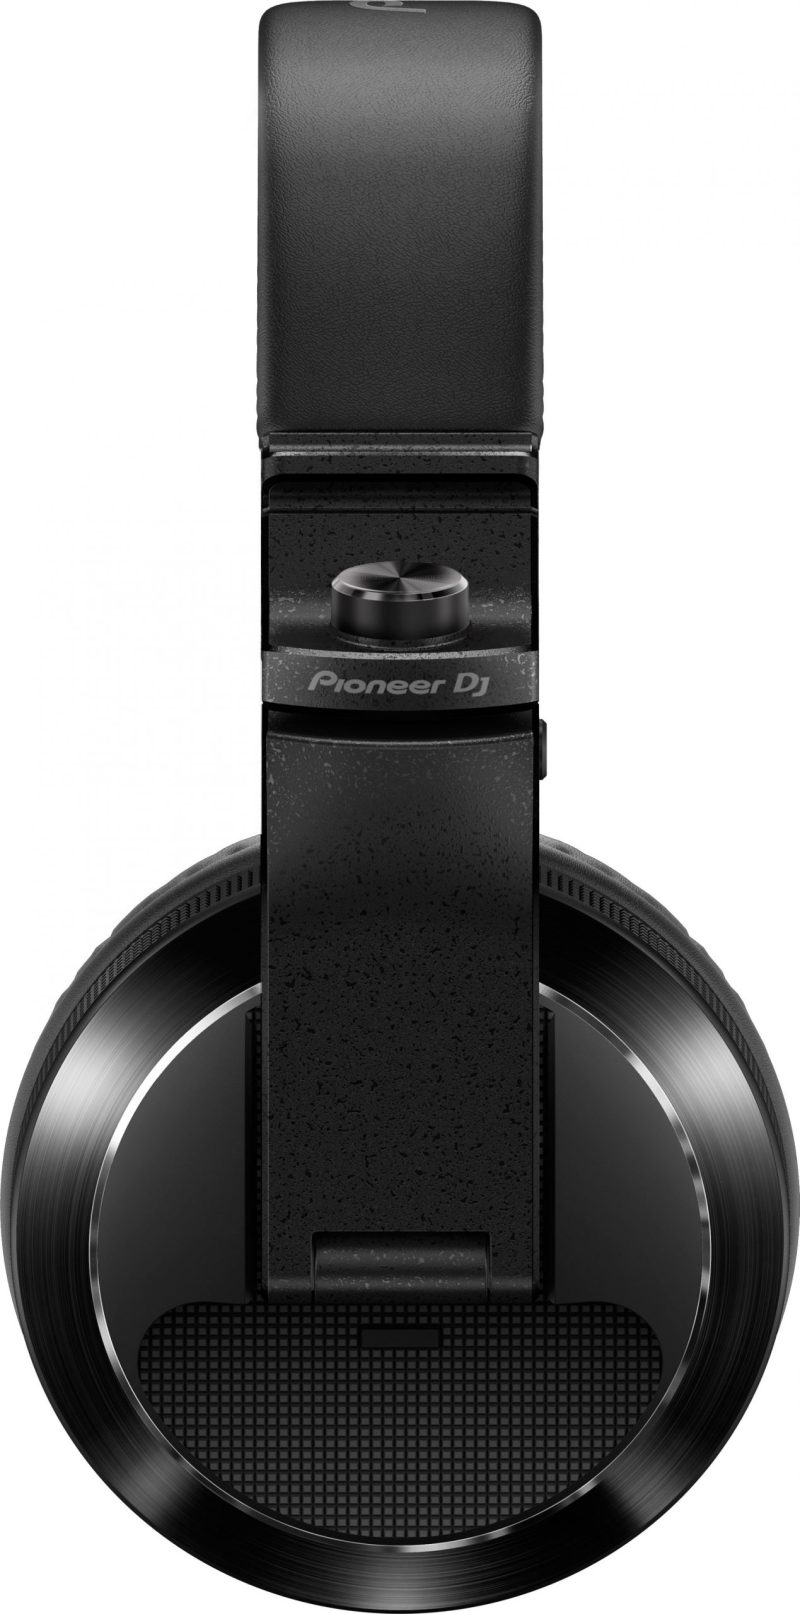 Side view of Pioneer DJ HDJ-X7 DJ